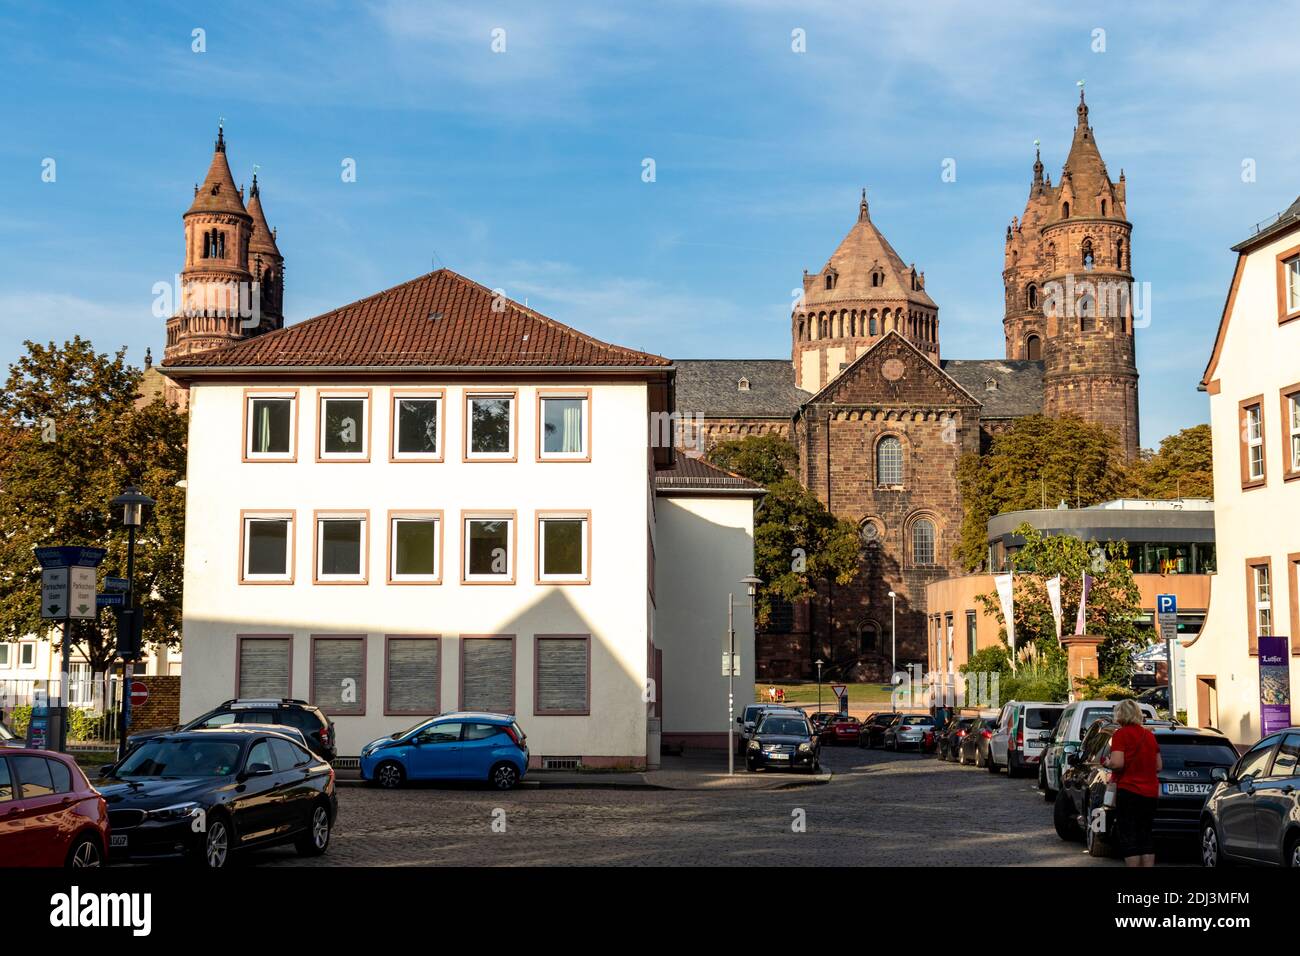 Edifici, persone e un parcheggio intorno alla Cattedrale di San Pietro a Worms, Germania. Foto Stock